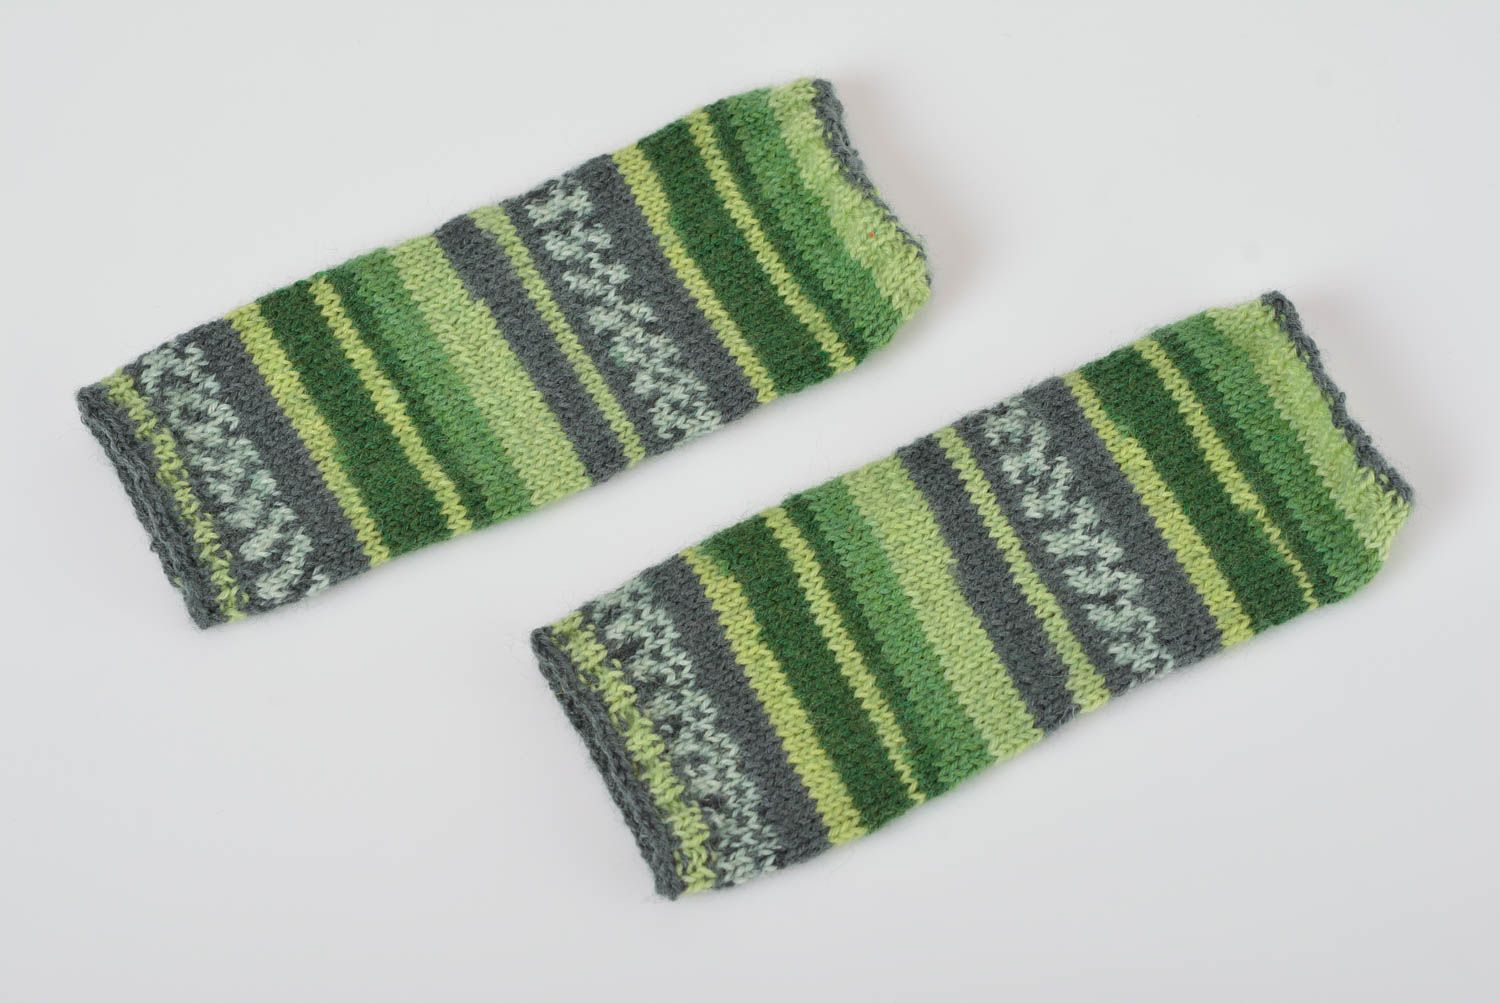 Mitaines vertes rayées tricotées en laine avec des aiguilles faites main photo 1